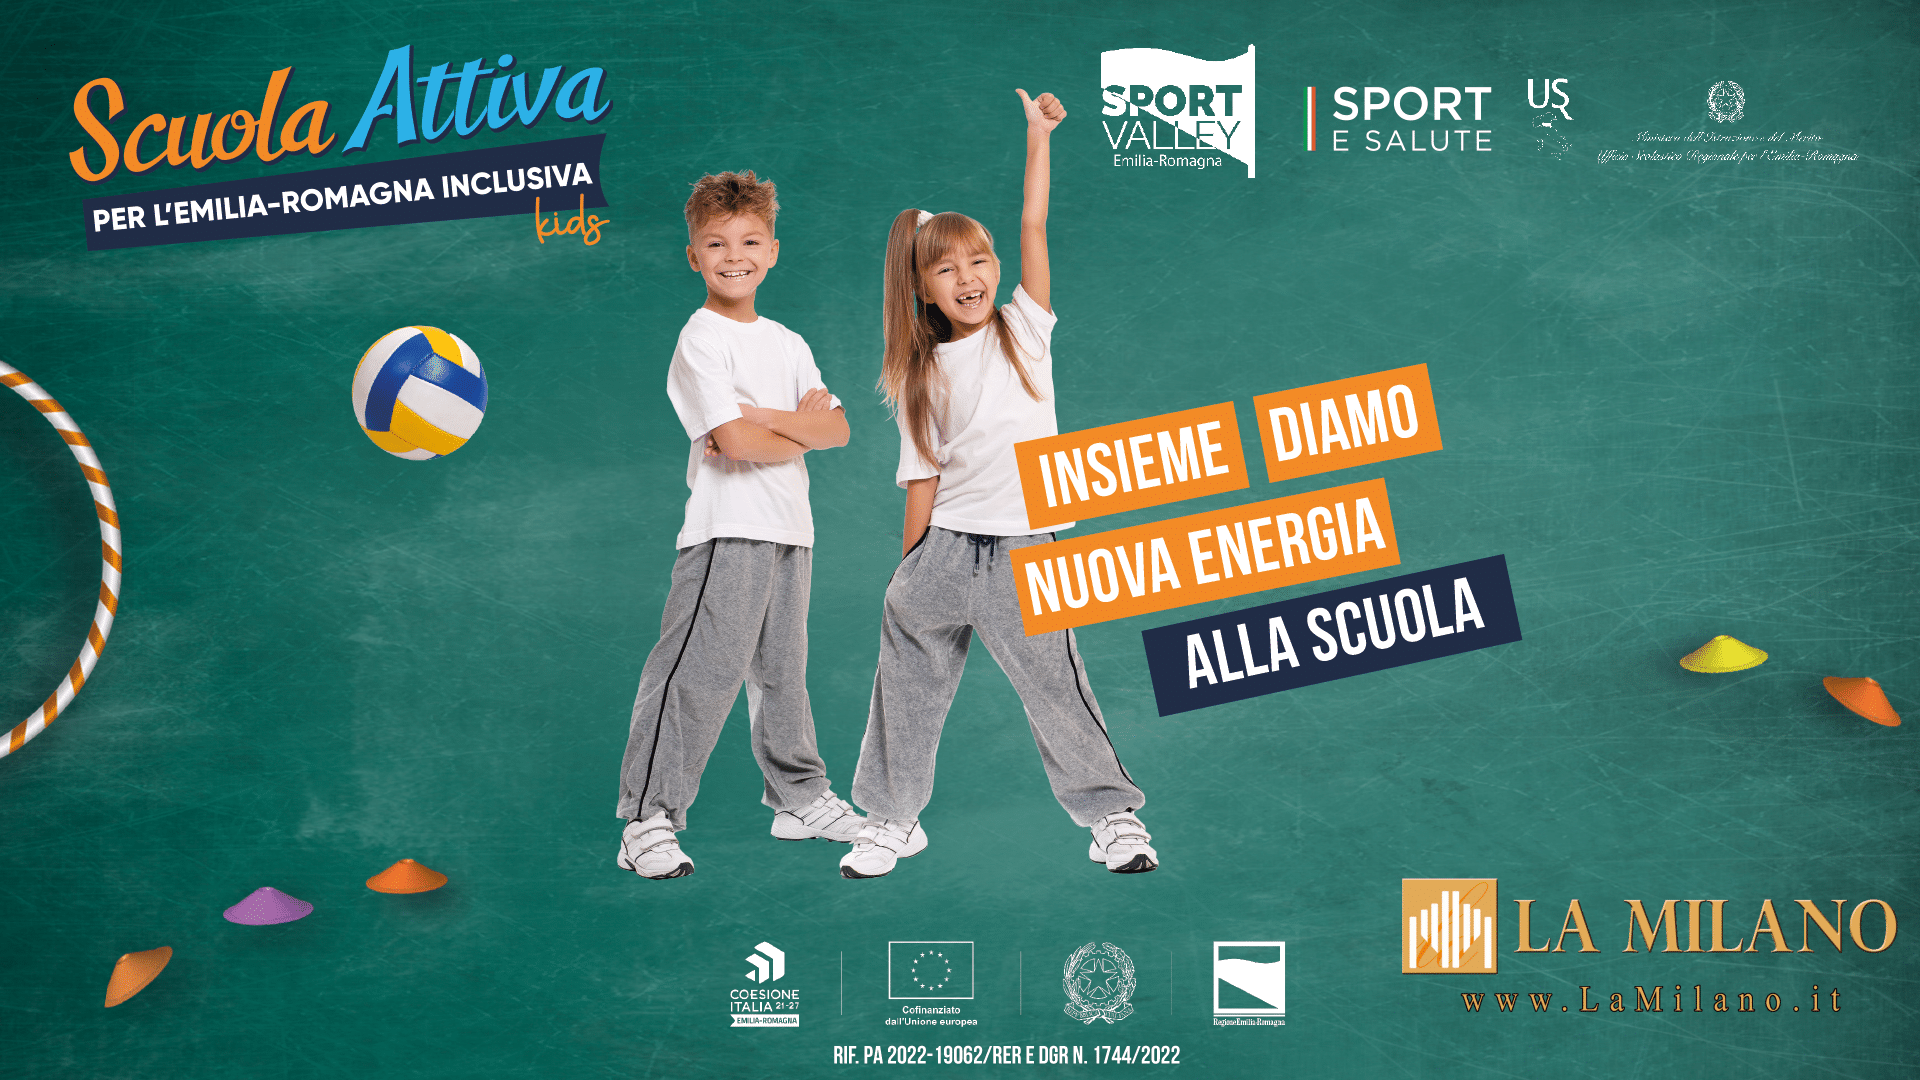 Bologna: progetto "Scuola Attiva per l'Emilia-Romagna inclusiva". L'attività motoria arriva nella scuola dell'infanzia.